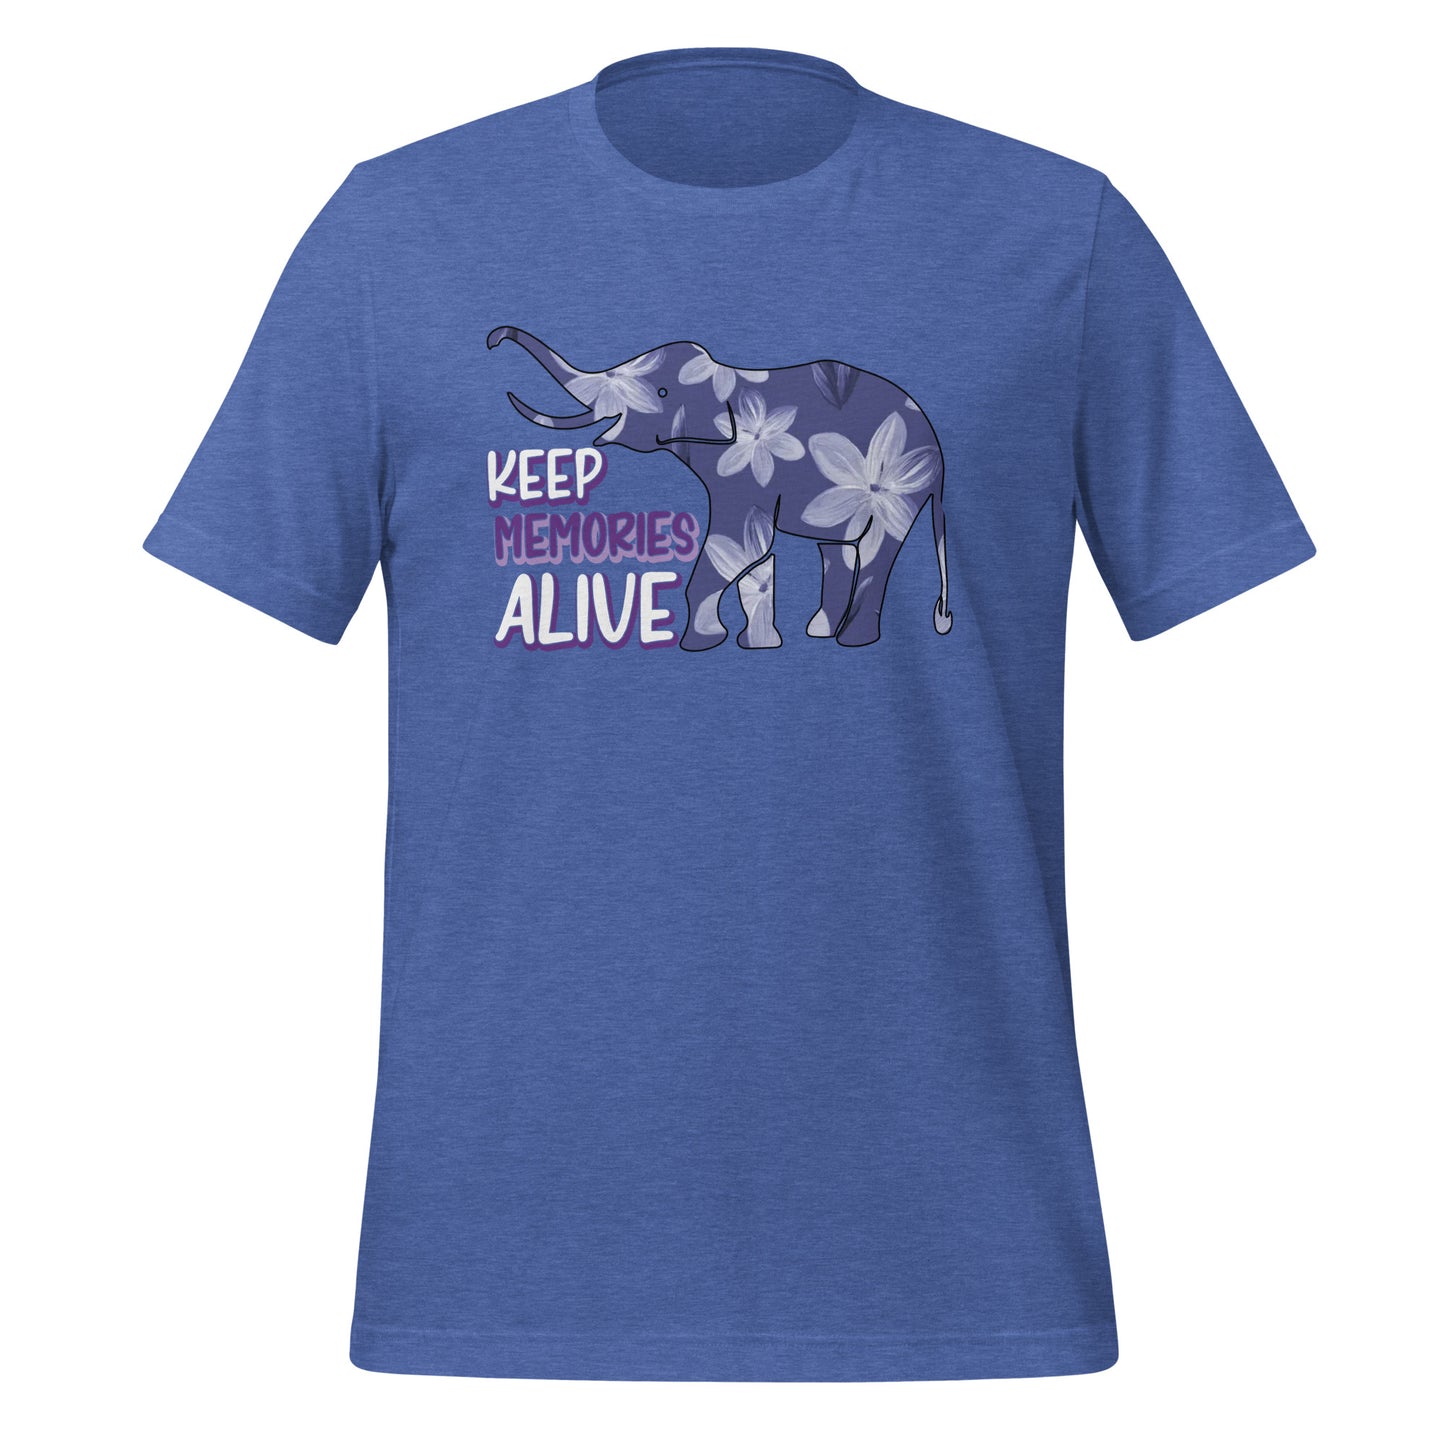 Alzheimer's Awareness Quality Cotton Bella Canvas Adult T-Shirt